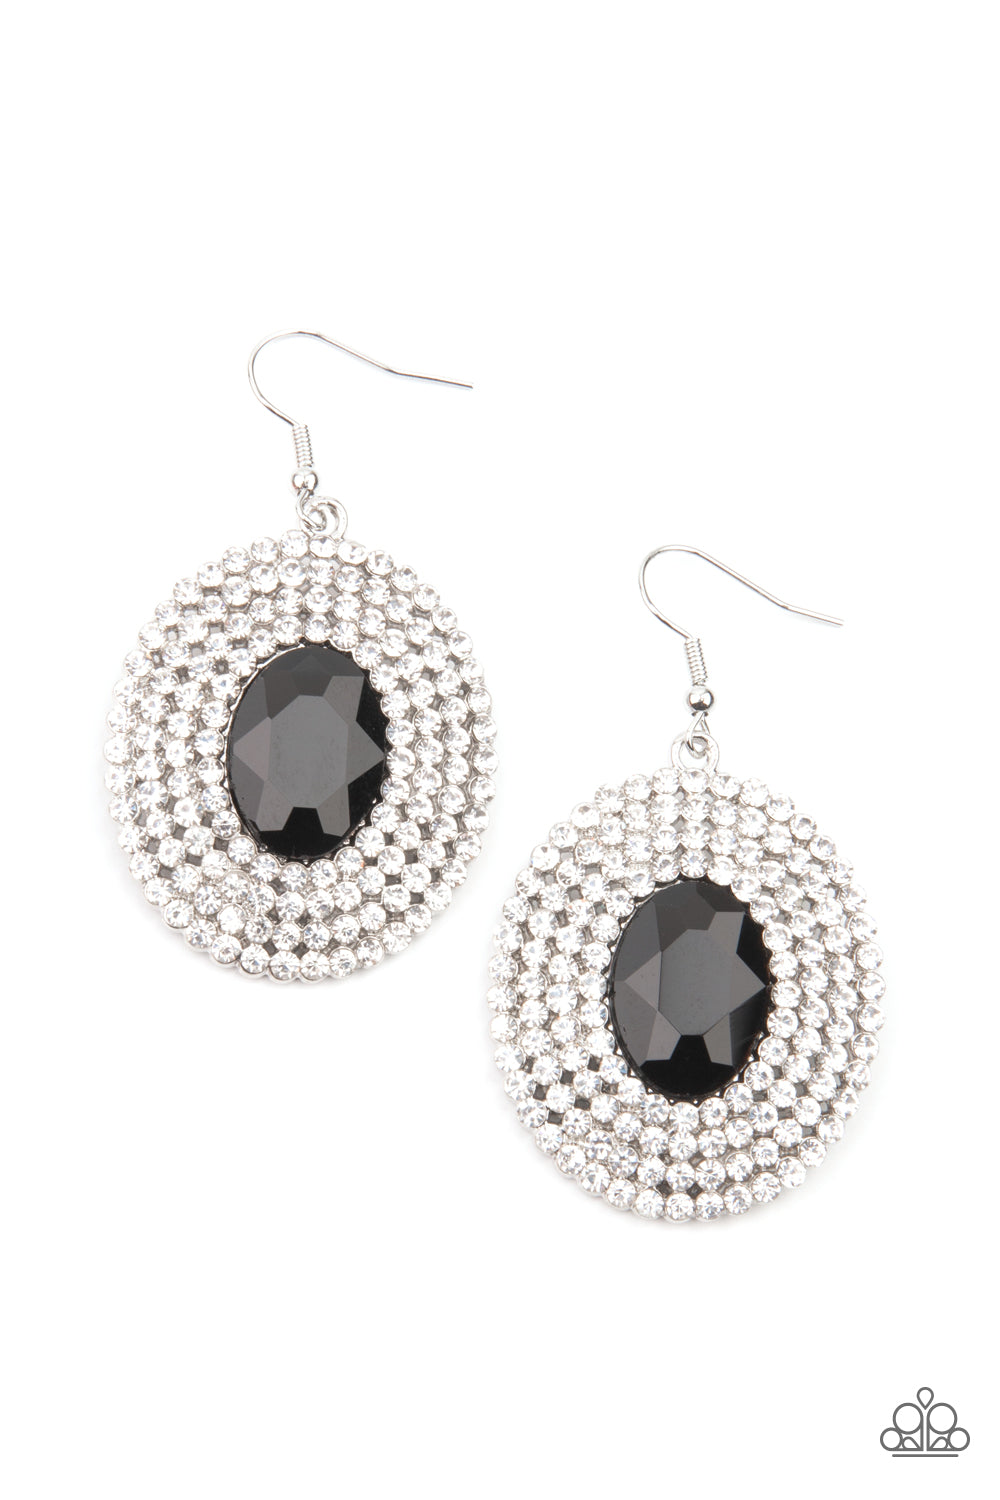 five-dollar-jewelry-fierce-field-black-earrings-paparazzi-accessories